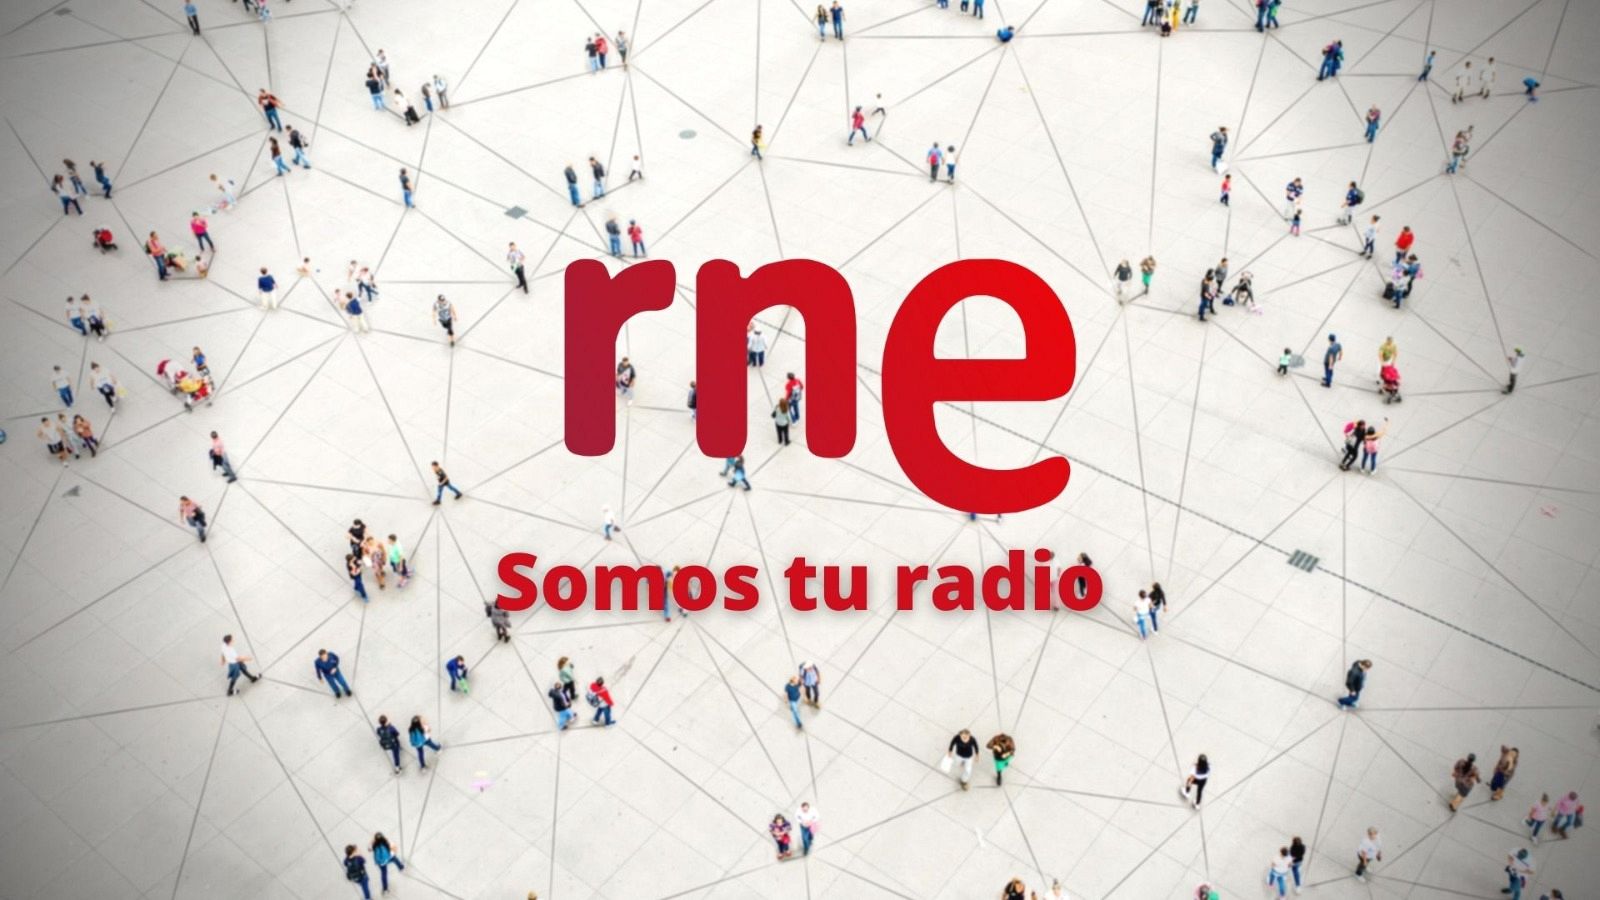 Las cuñas de RNE - 'RNE. Somos tu radio', nueva temporada 2020-21 de Radio Nacional de España - Ver ahora